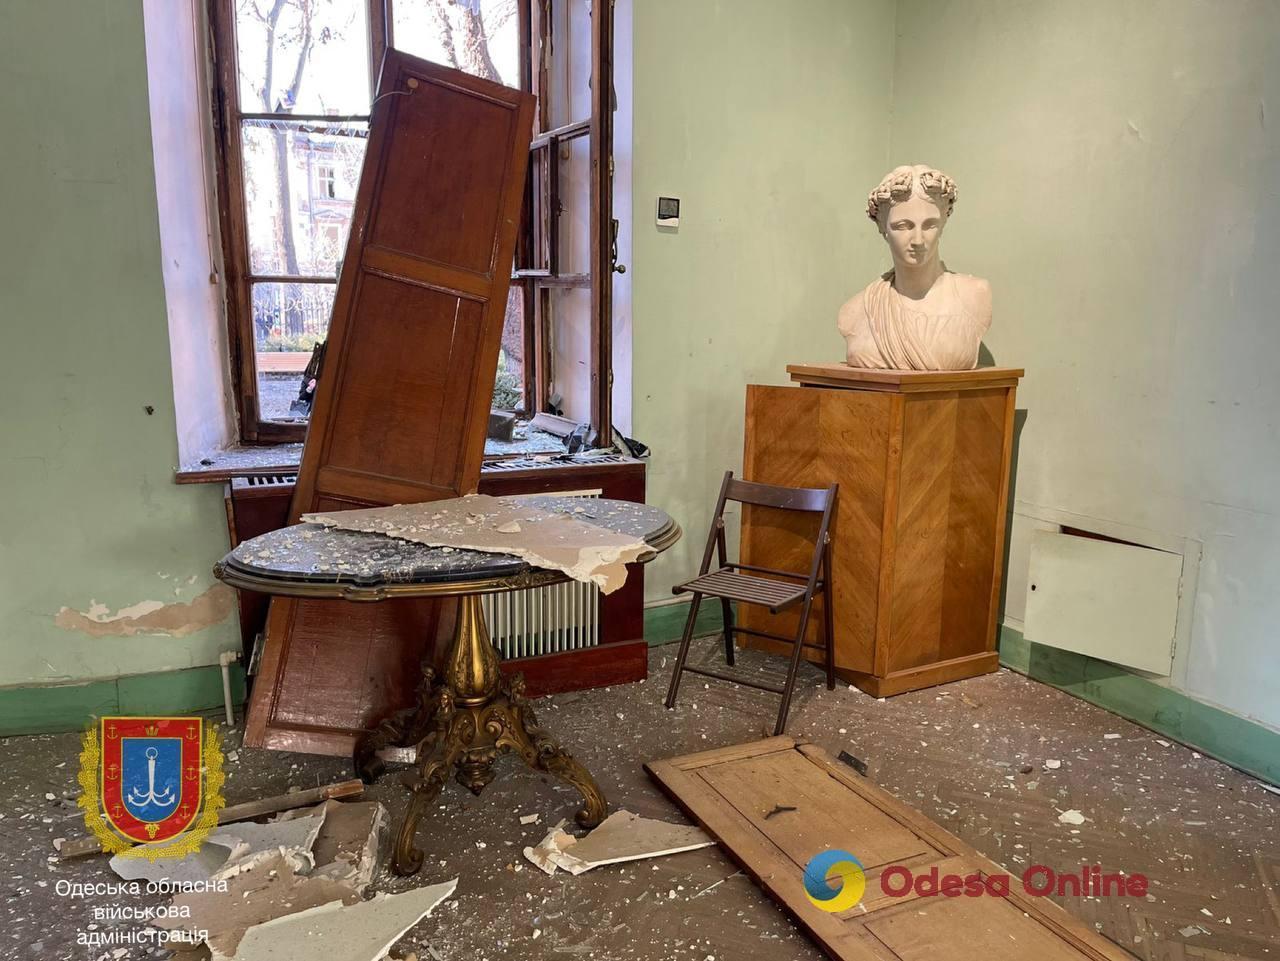 З липня цього року Росія пошкодила понад 90 пам’яток архітектури в Одесі